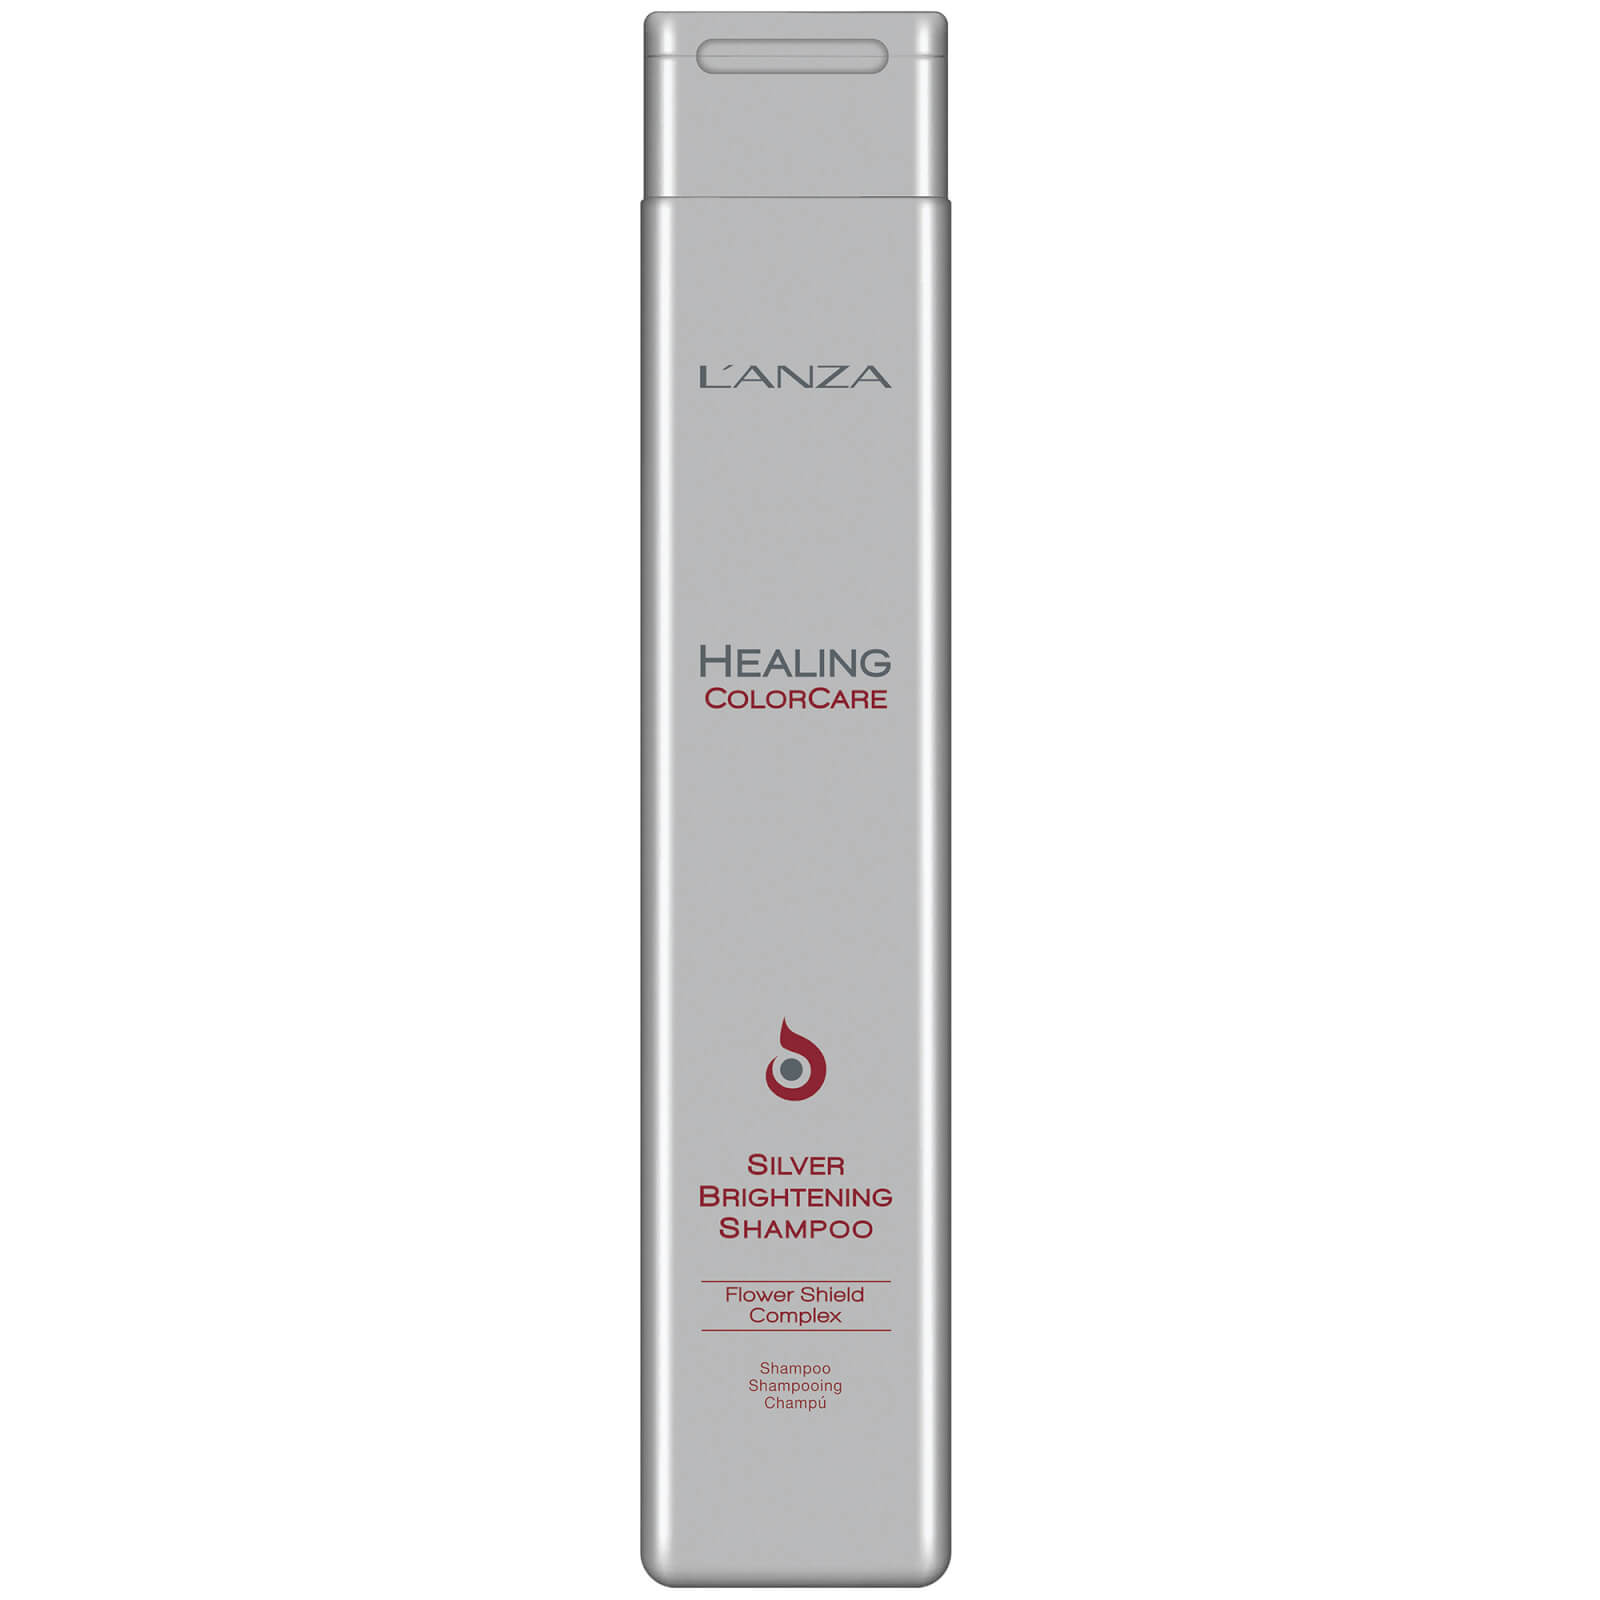 L'Anza Healing Colorcare Silver Brightening Shampoo (300ml)